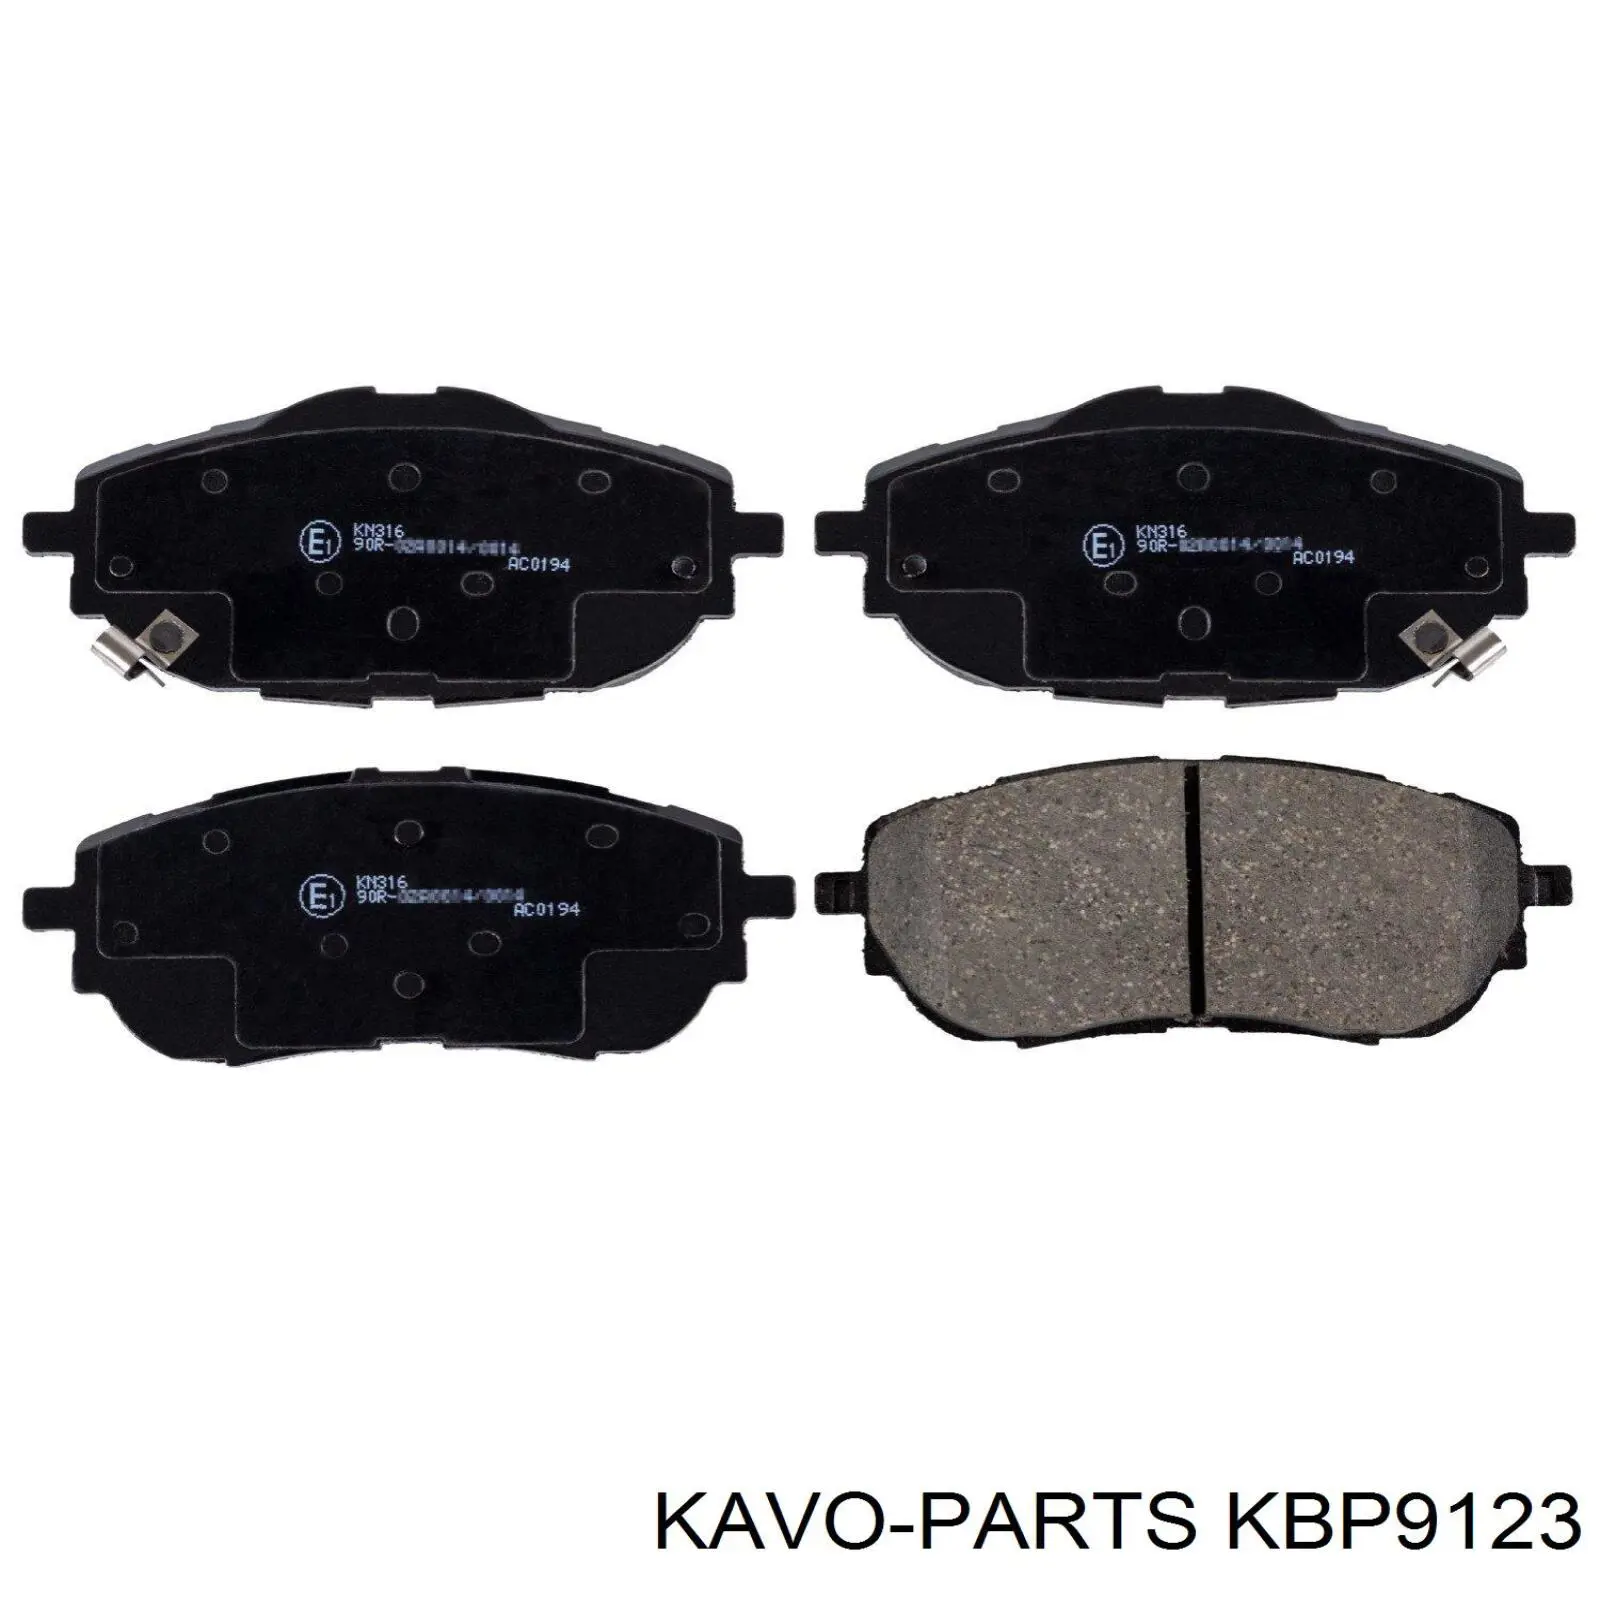 KBP-9123 Kavo Parts pastillas de freno delanteras